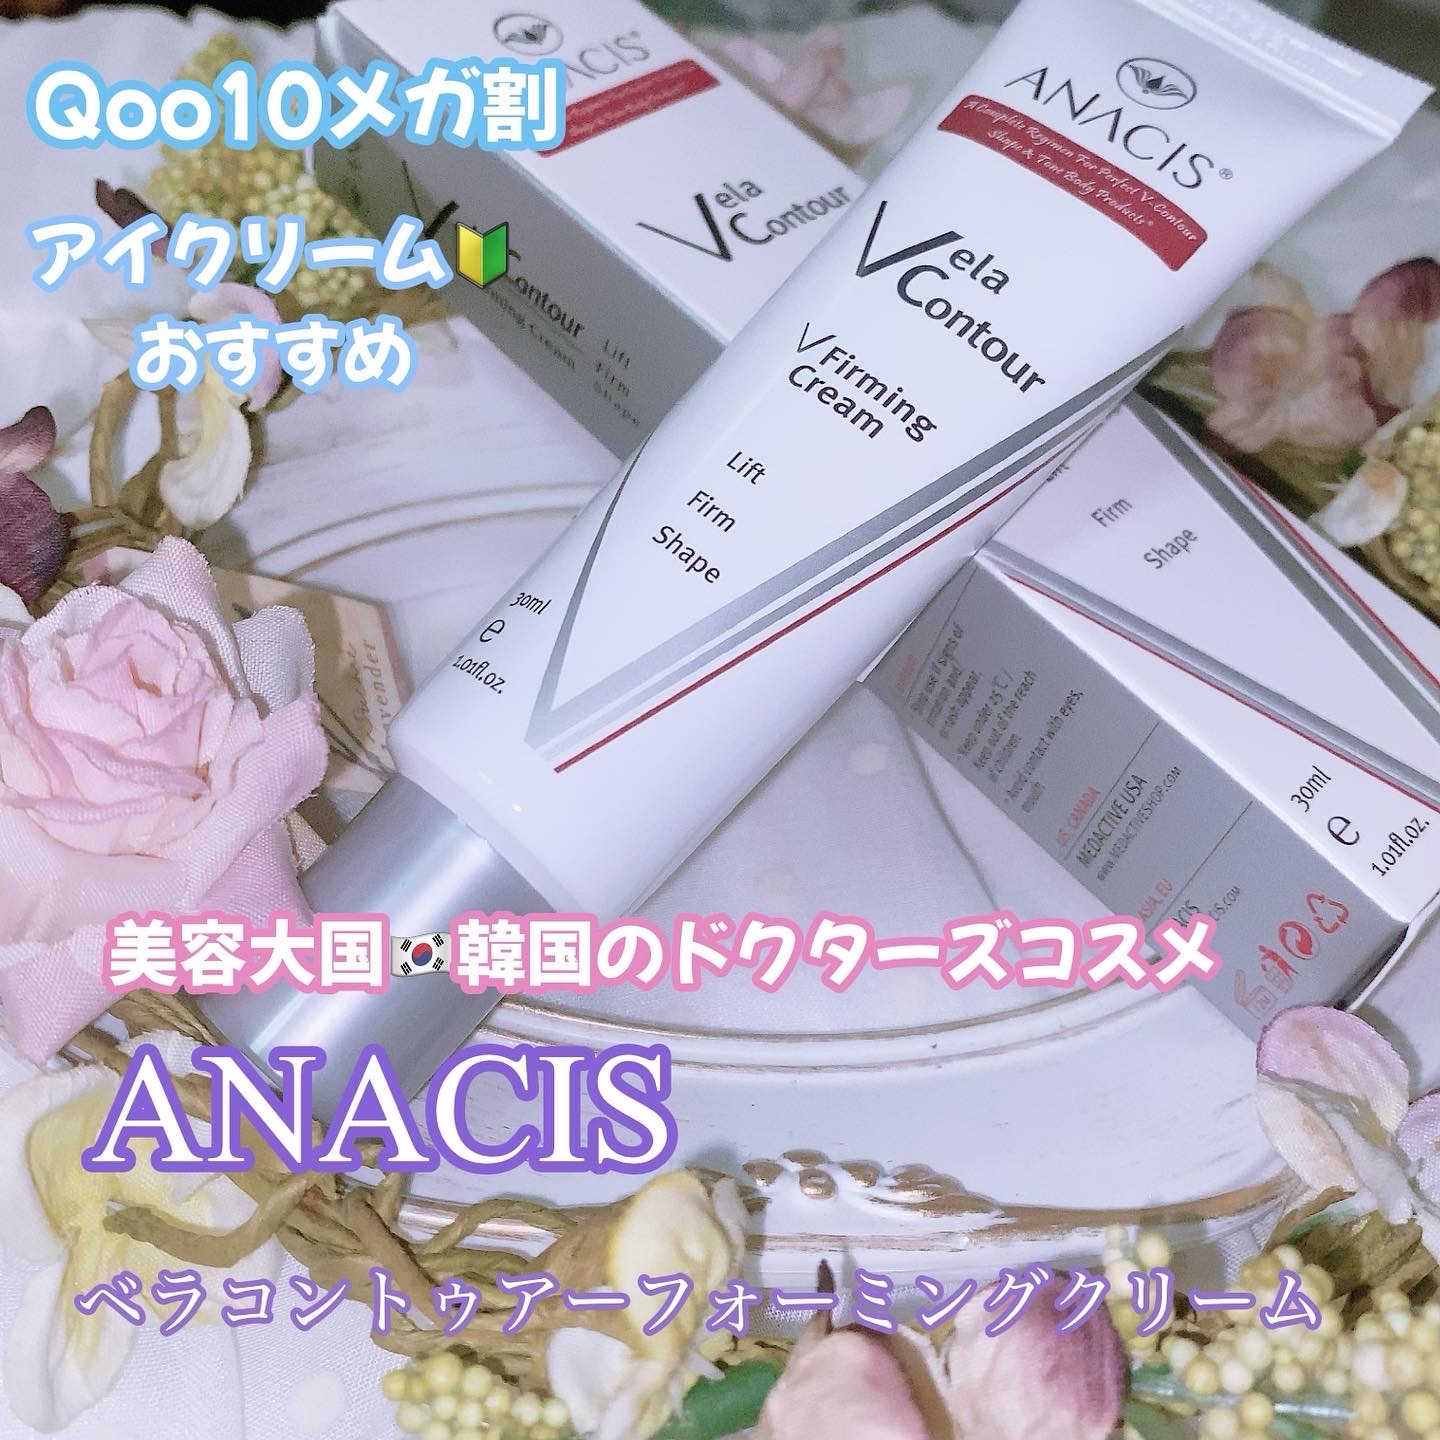 ANACIS
ベラコントゥアーフォーミングクリームの良い点・メリットに関する珈琲豆♡さんの口コミ画像1